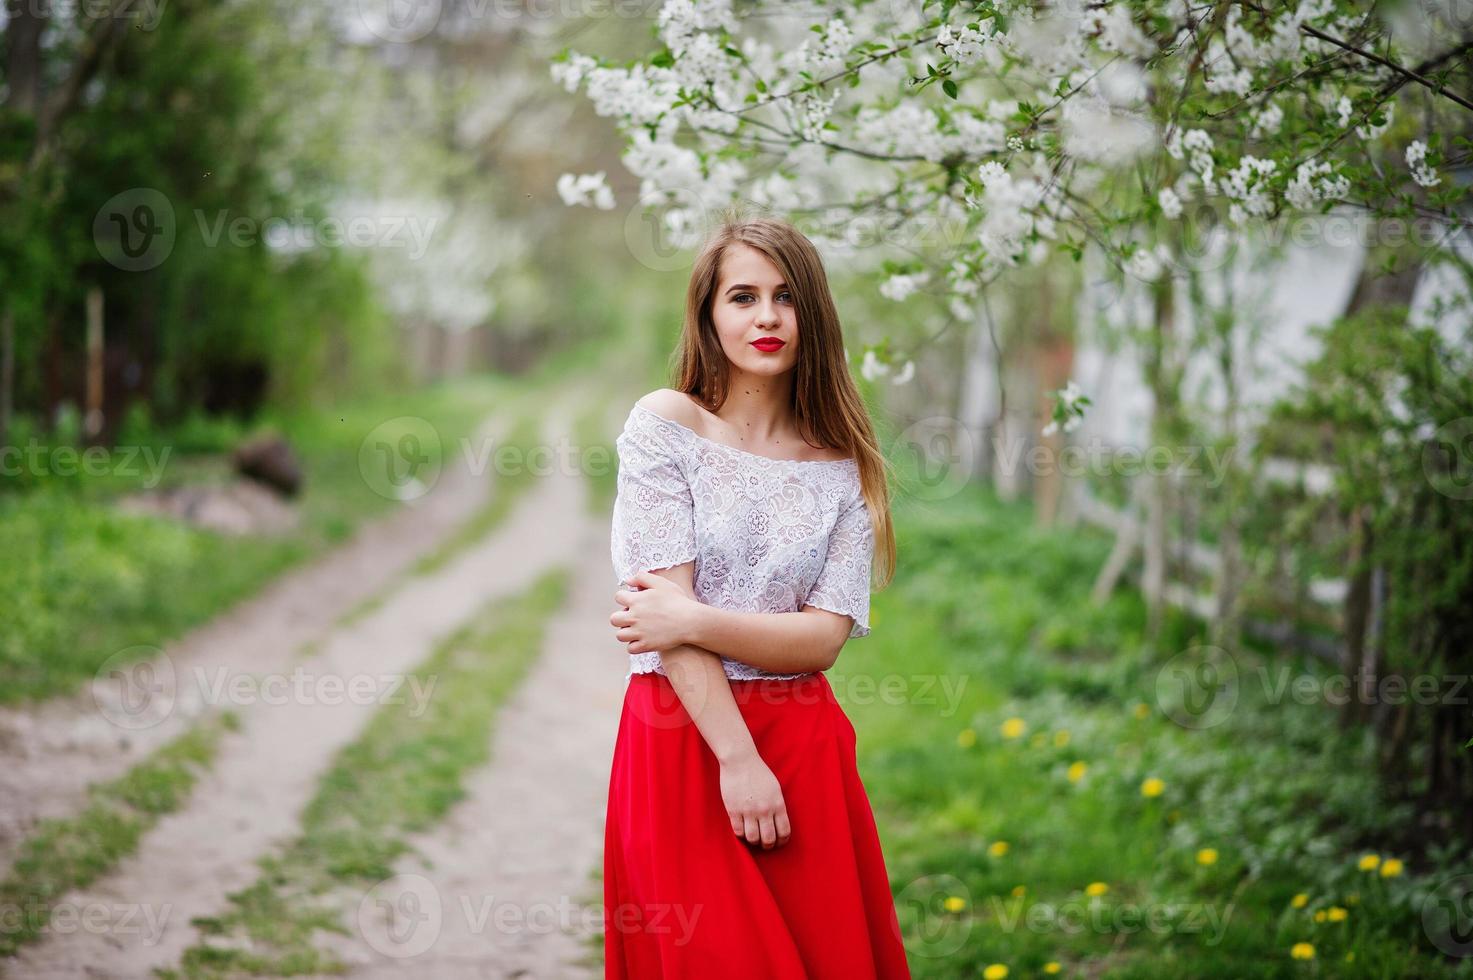 Porträt eines schönen Mädchens mit roten Lippen im Frühlingsblütengarten, trägt ein rotes Kleid und eine weiße Bluse. foto